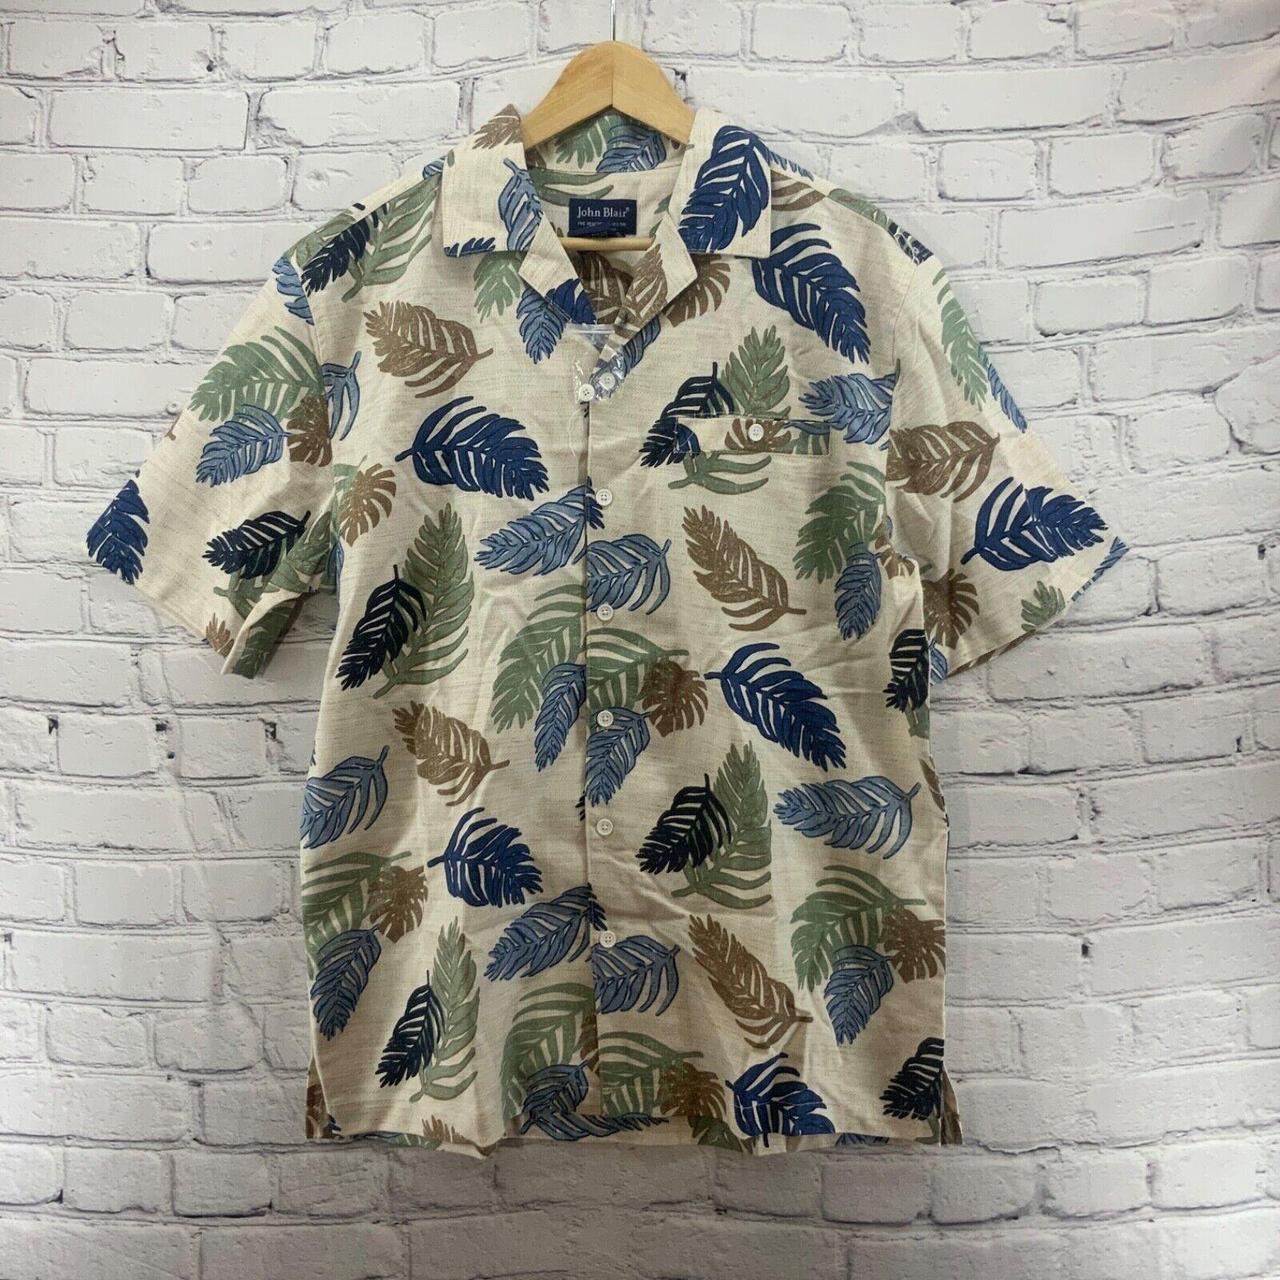 John Blair Hawaiian Shirt Button Up Sz M Med Leaf... - Depop